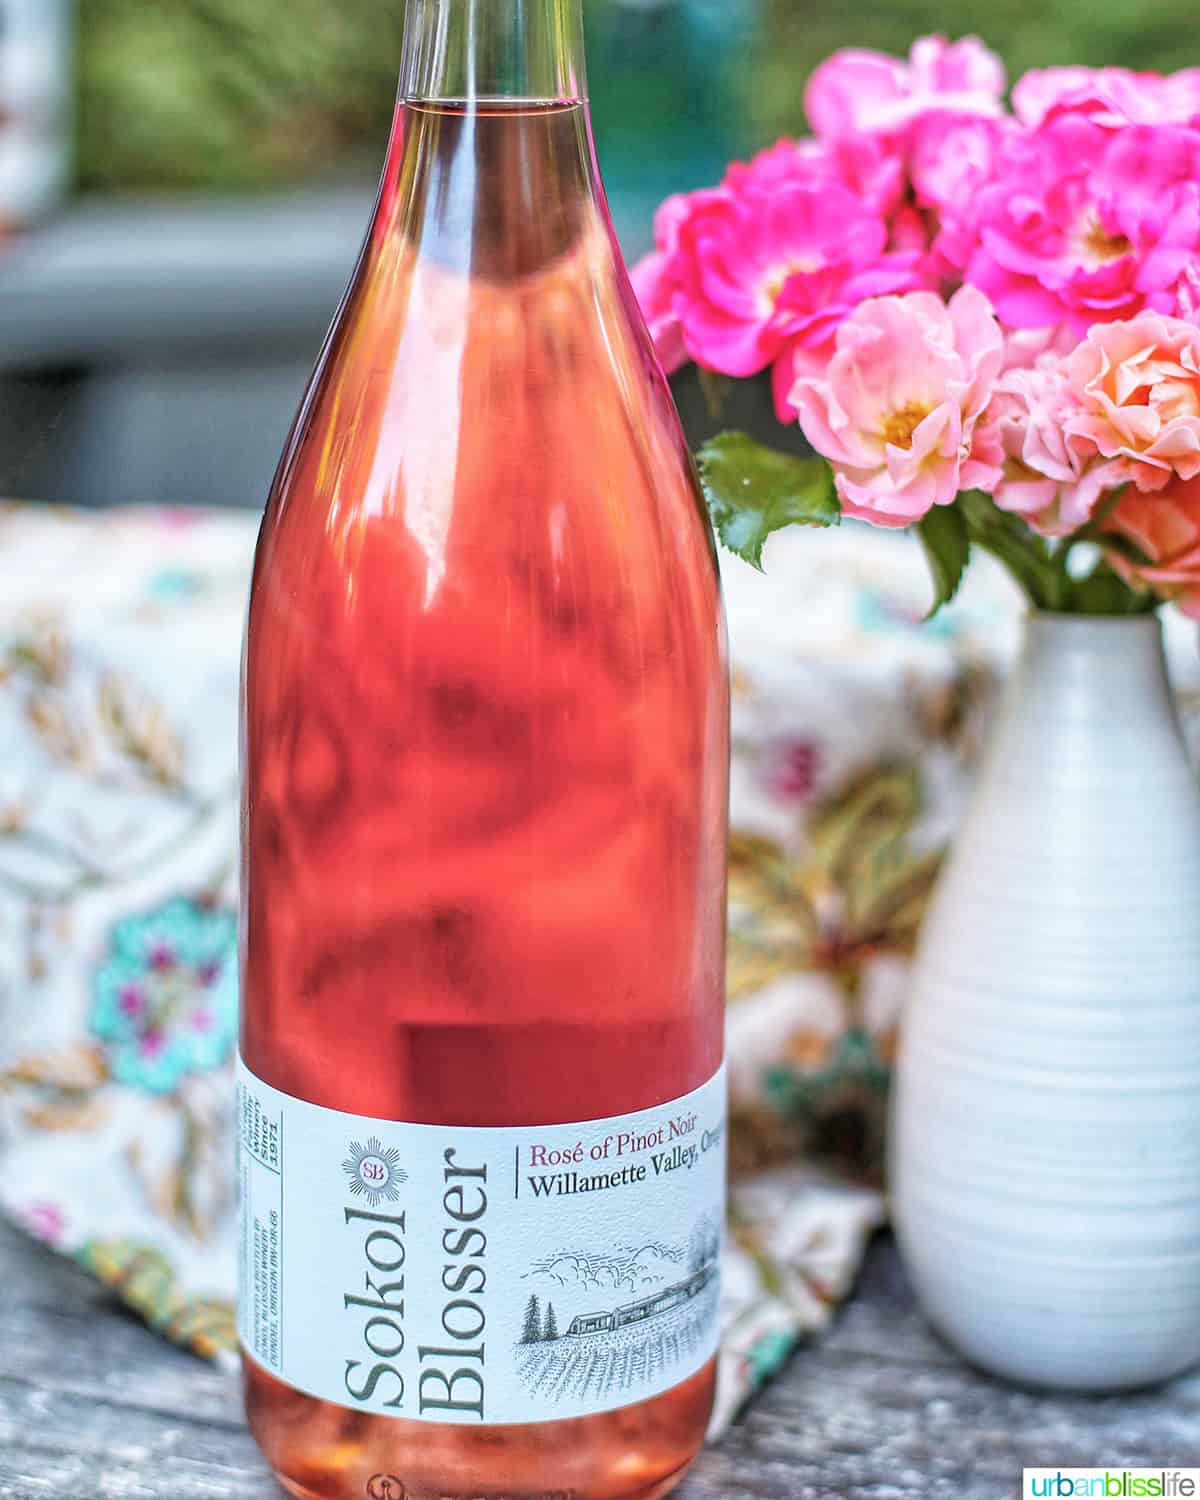 Sokol Blosser rose wine bottle